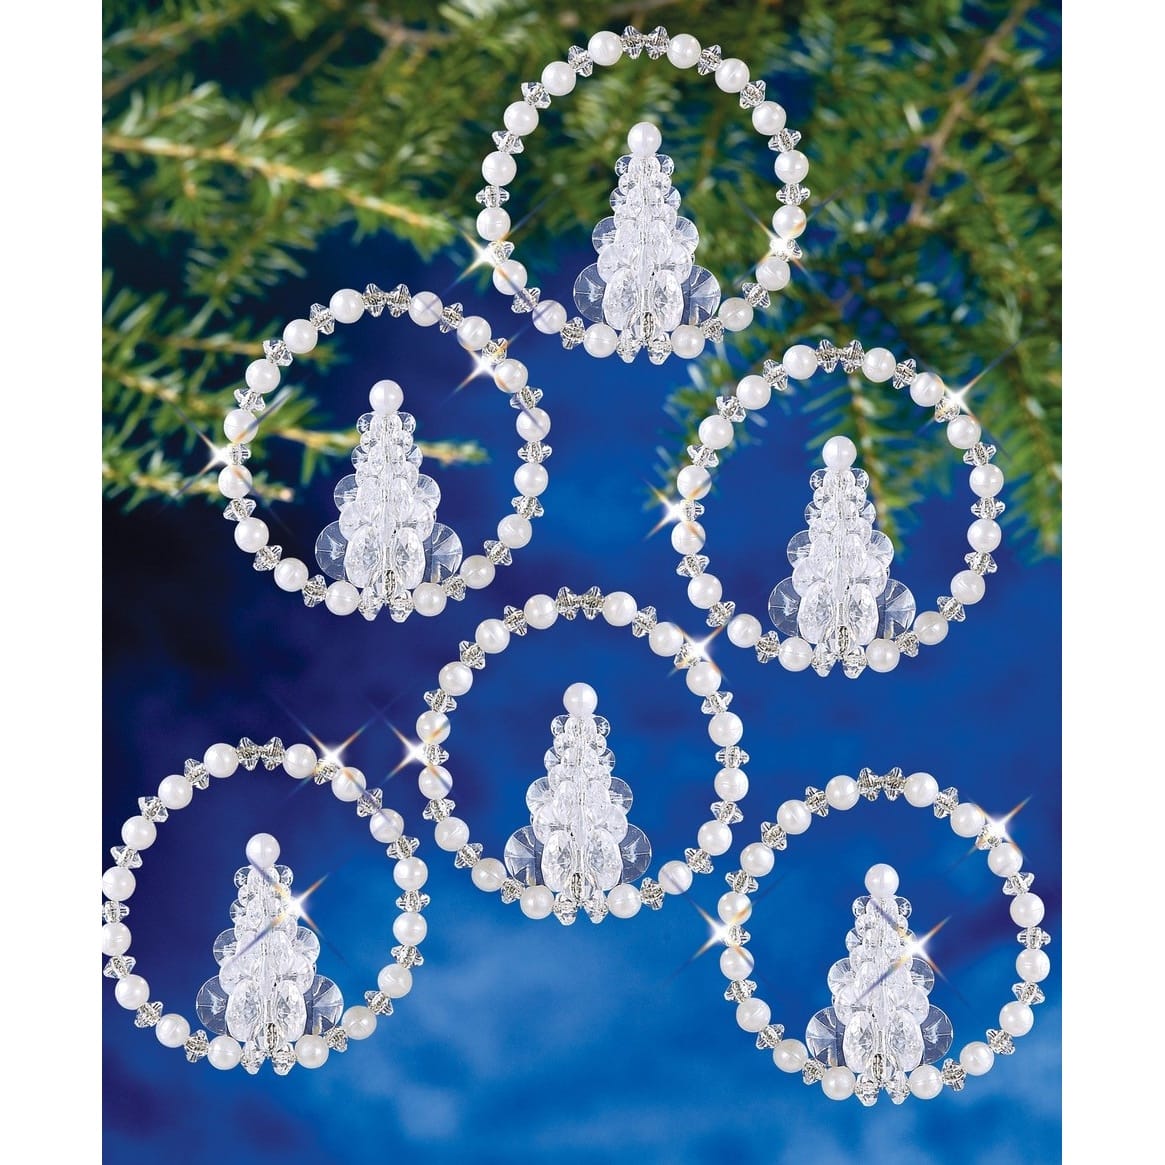 The Beadery® Christmas Tree Wreath Holiday Beaded Ornament Kit